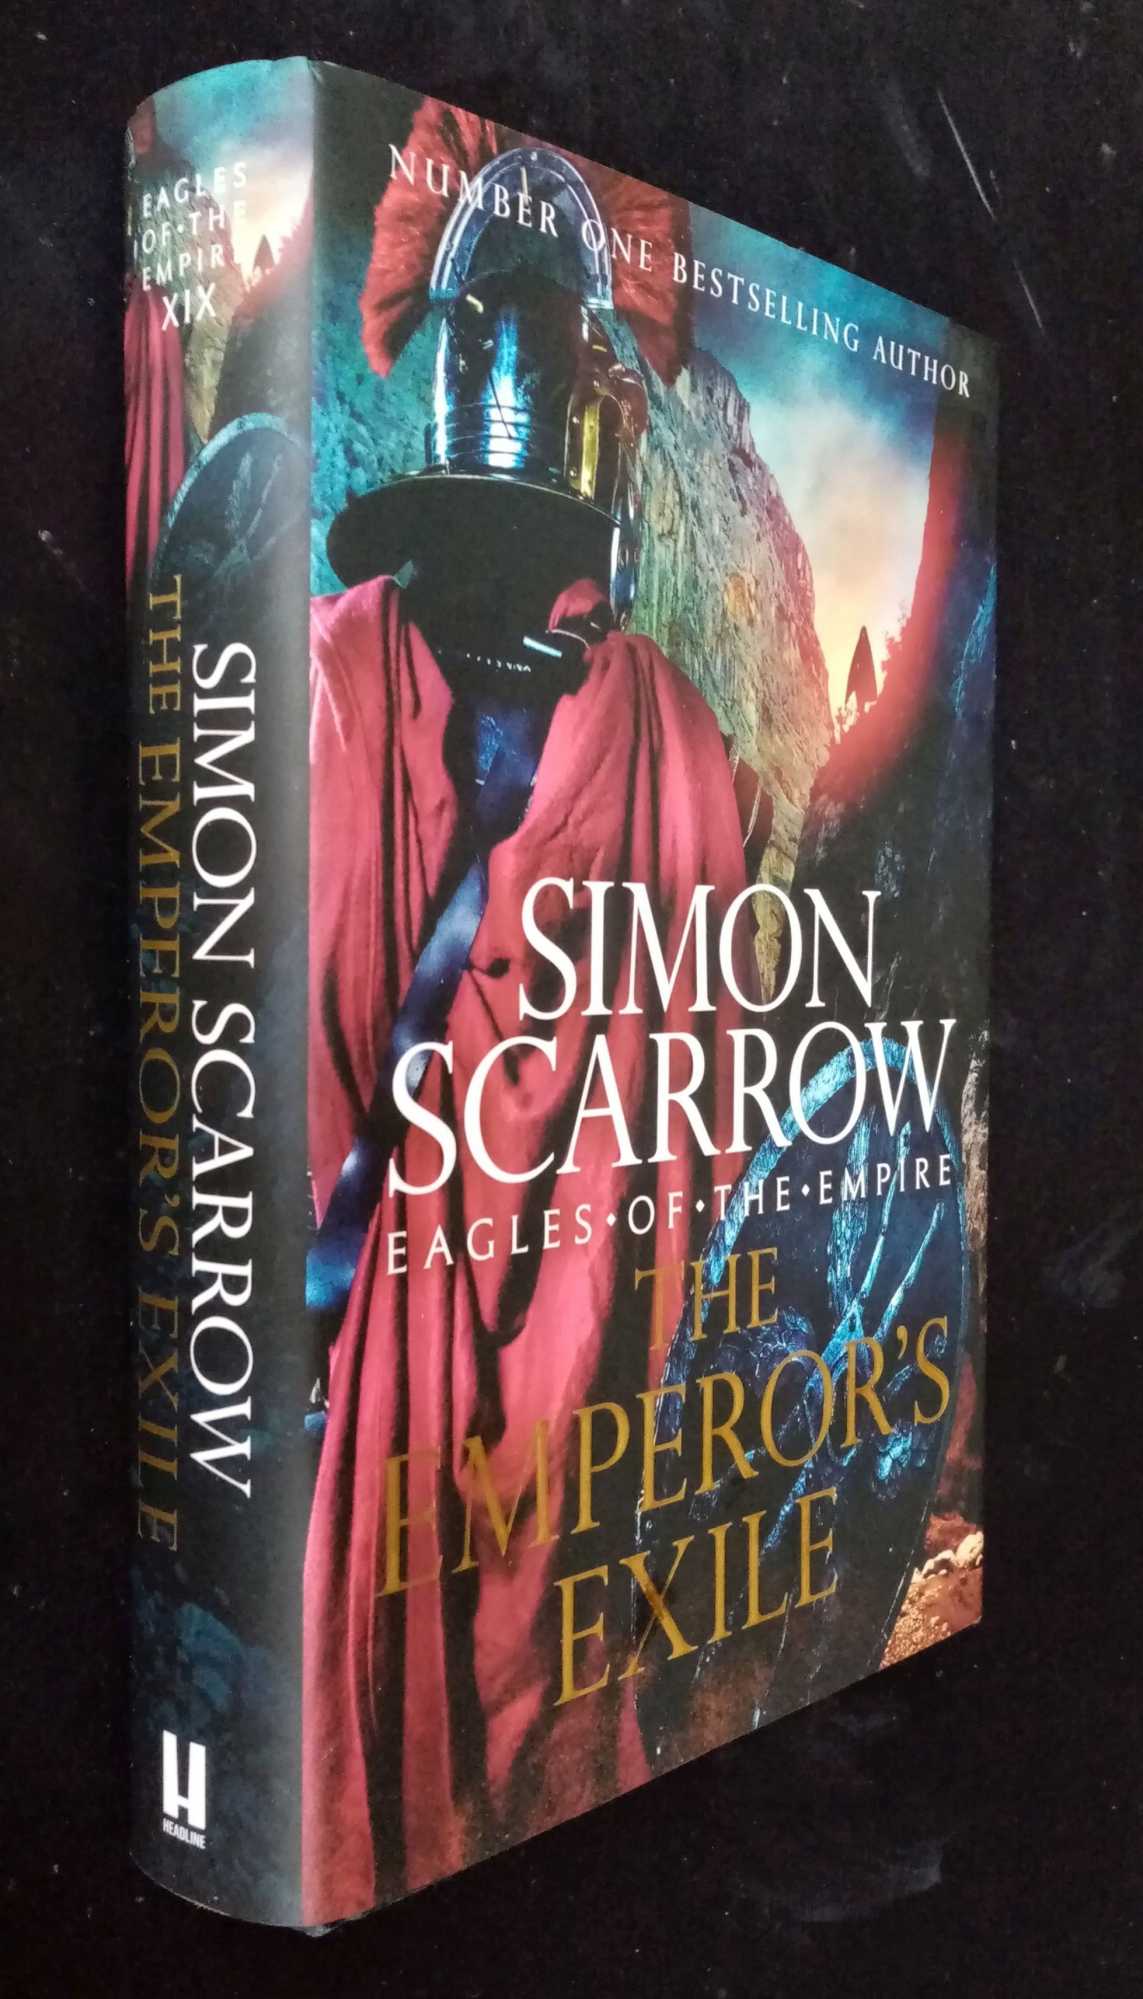 Simon Scarrow - The Emperor's Exile